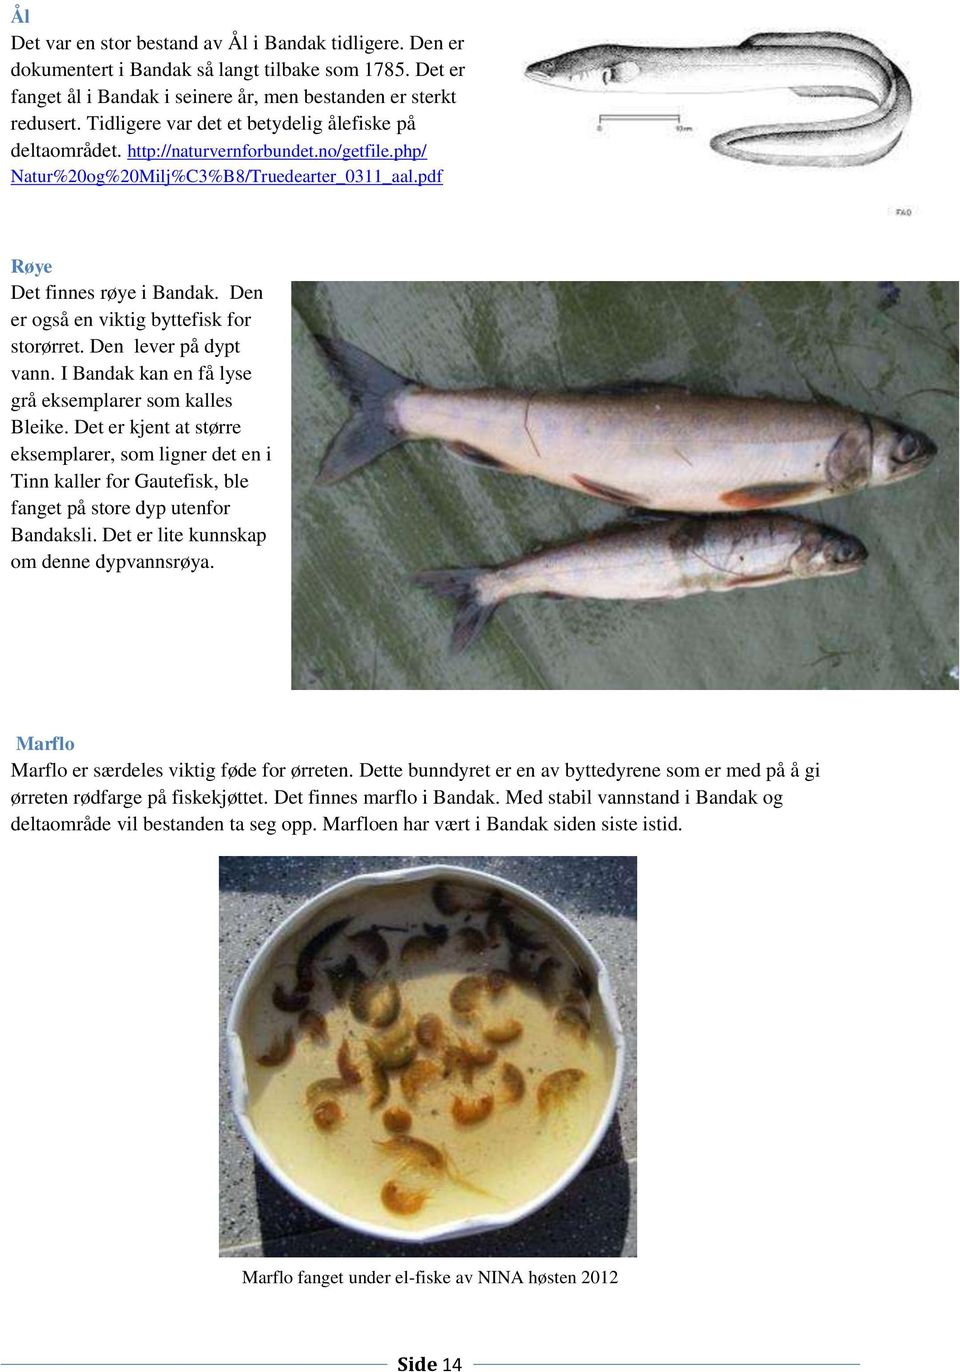 Den er også en viktig byttefisk for storørret. Den lever på dypt vann. I Bandak kan en få lyse grå eksemplarer som kalles Bleike.